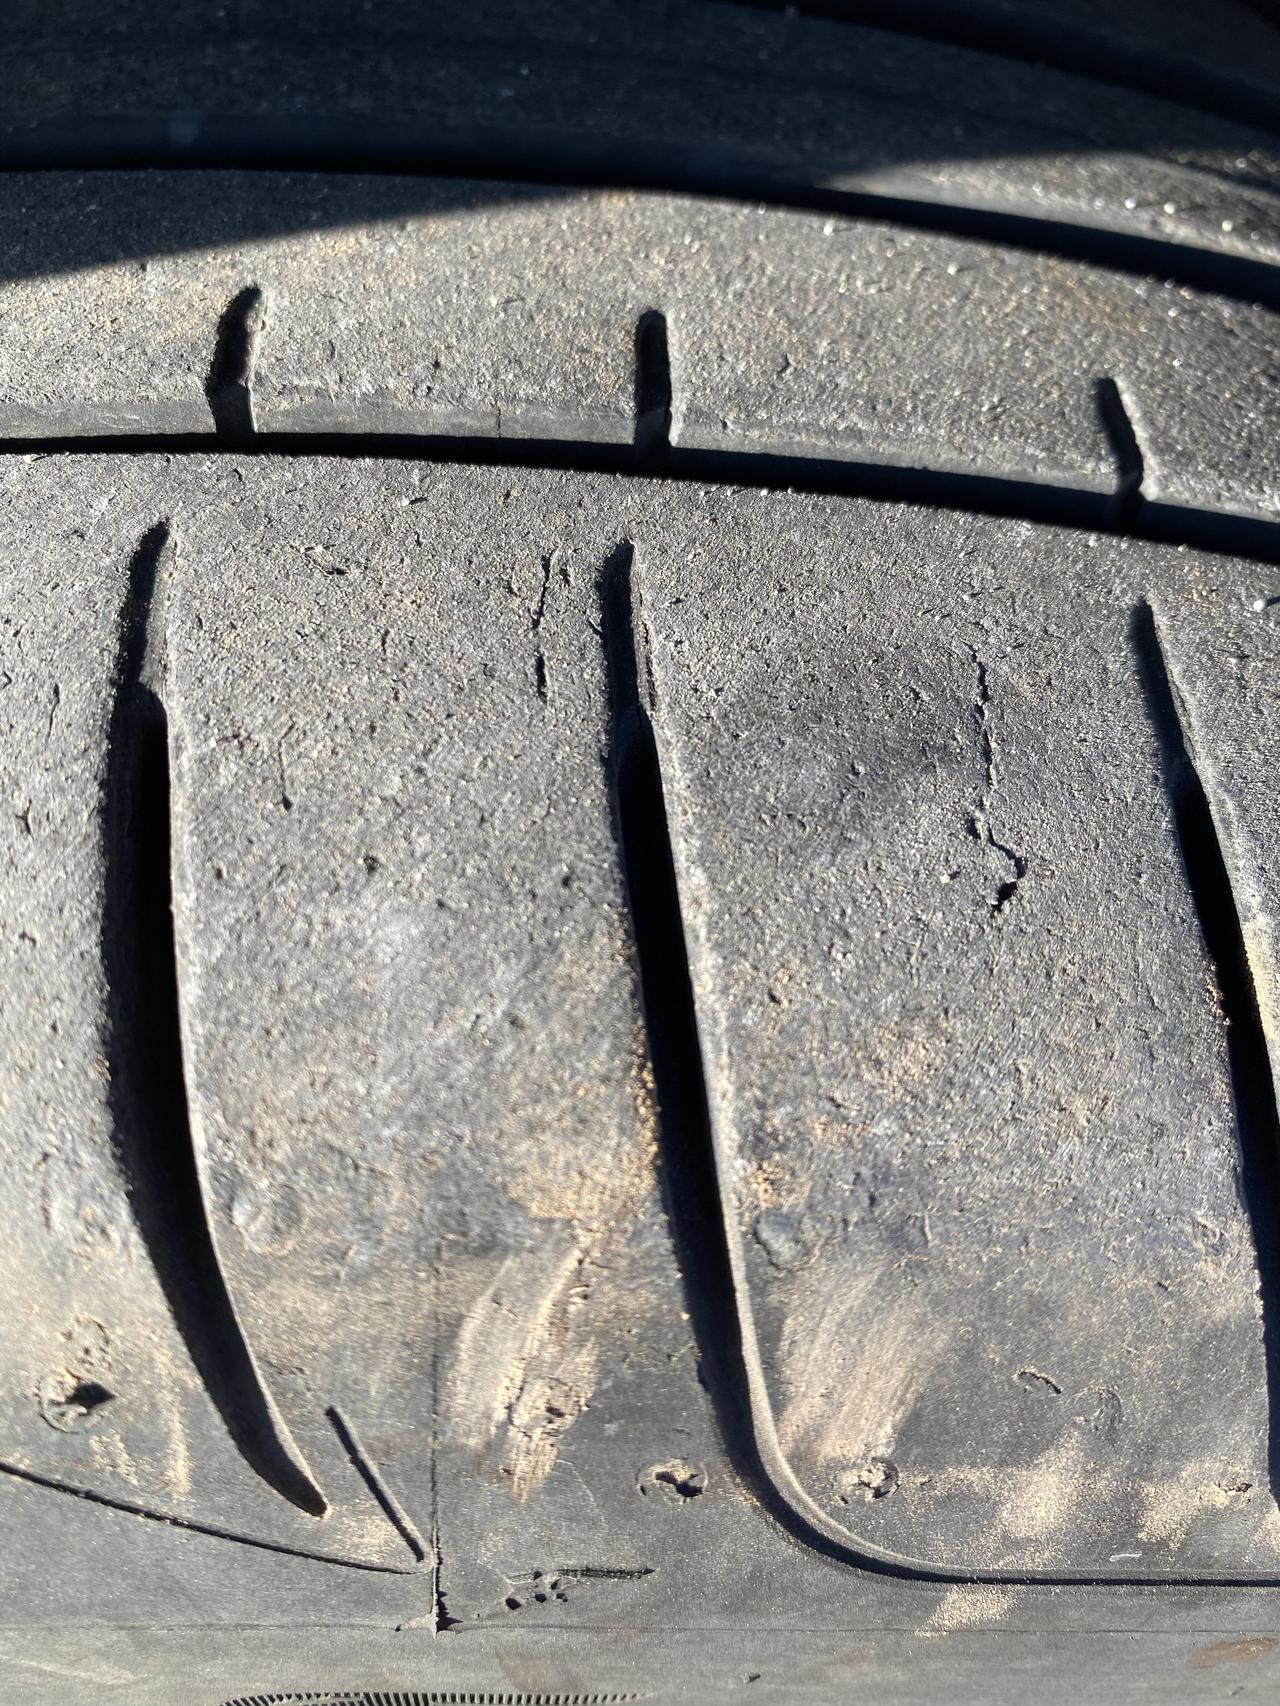 奥迪Q3 这两天看轮胎，发现有小裂纹了，这种情况下有必要换么，1年半，目前31000公里，车就放在露天环境。另外想问问米